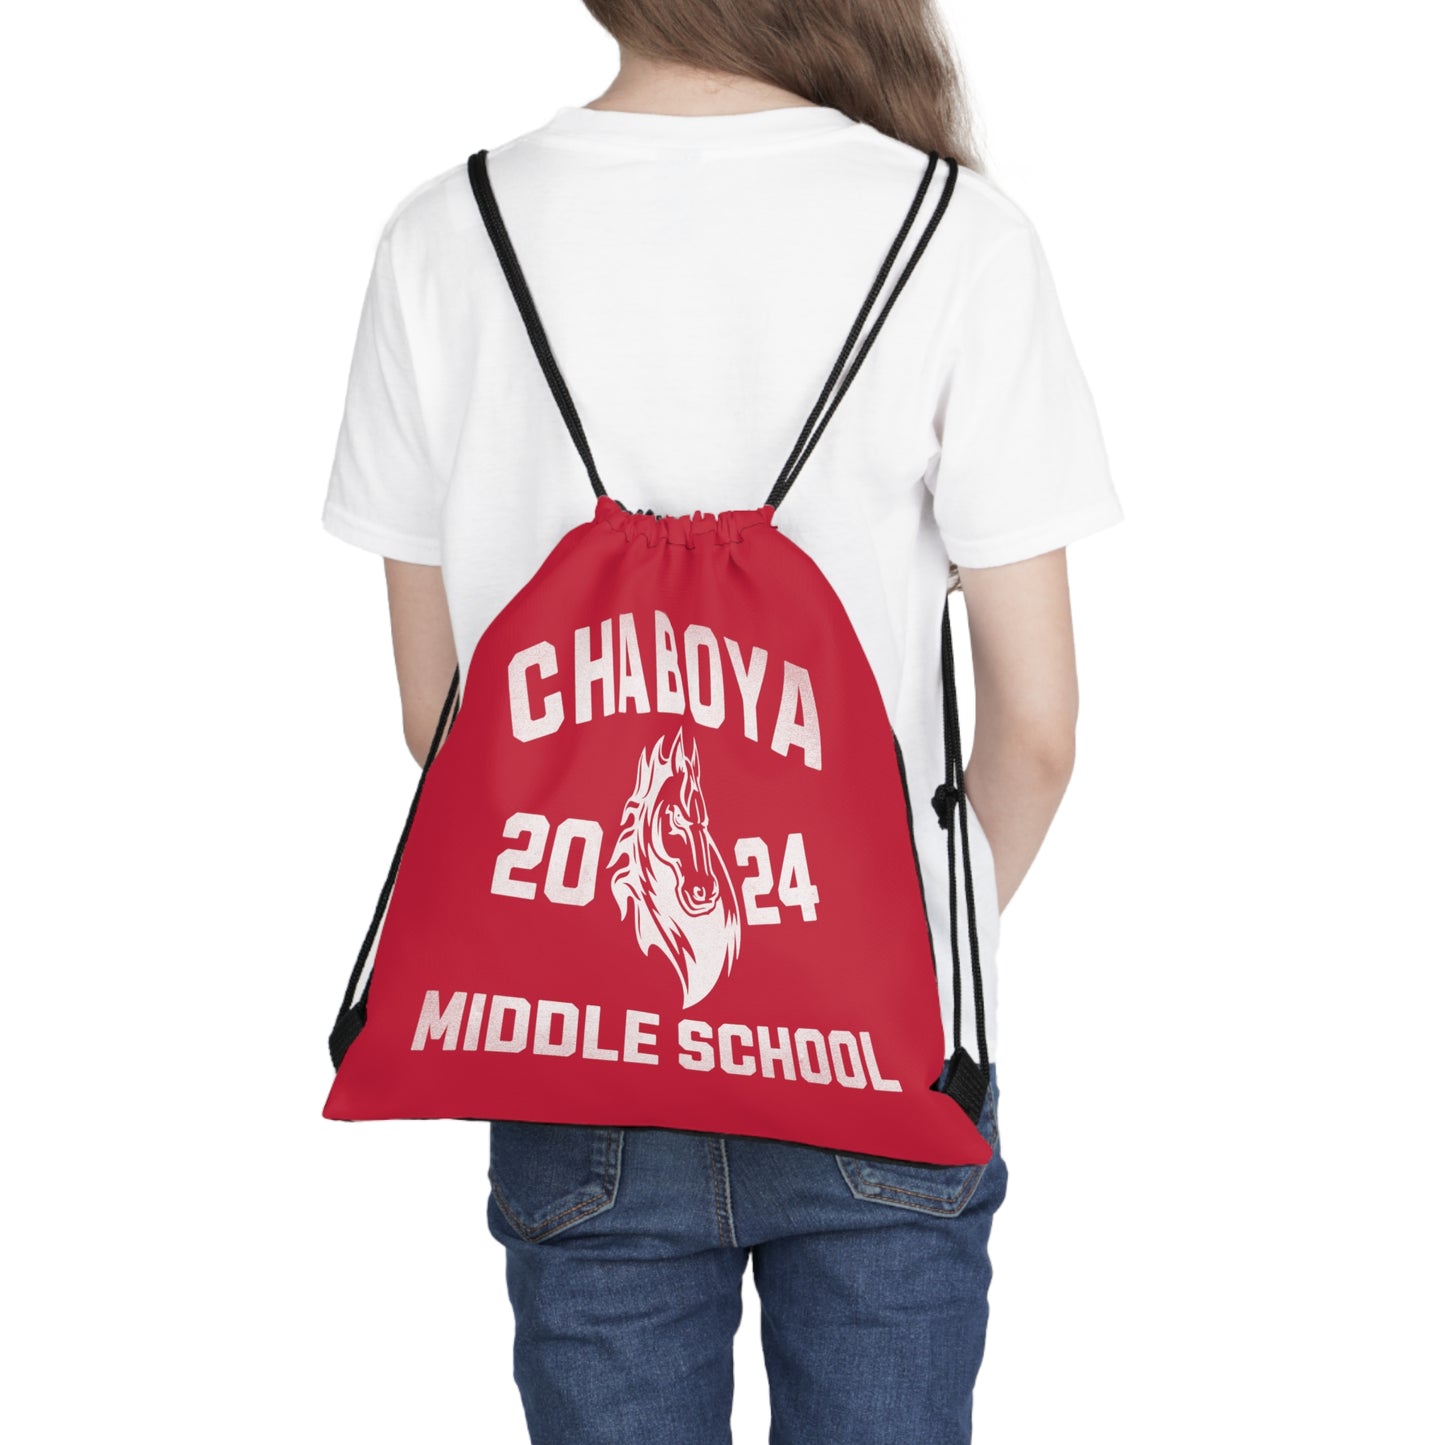 Chaboya Middle School 2024 - Drawstring Bag